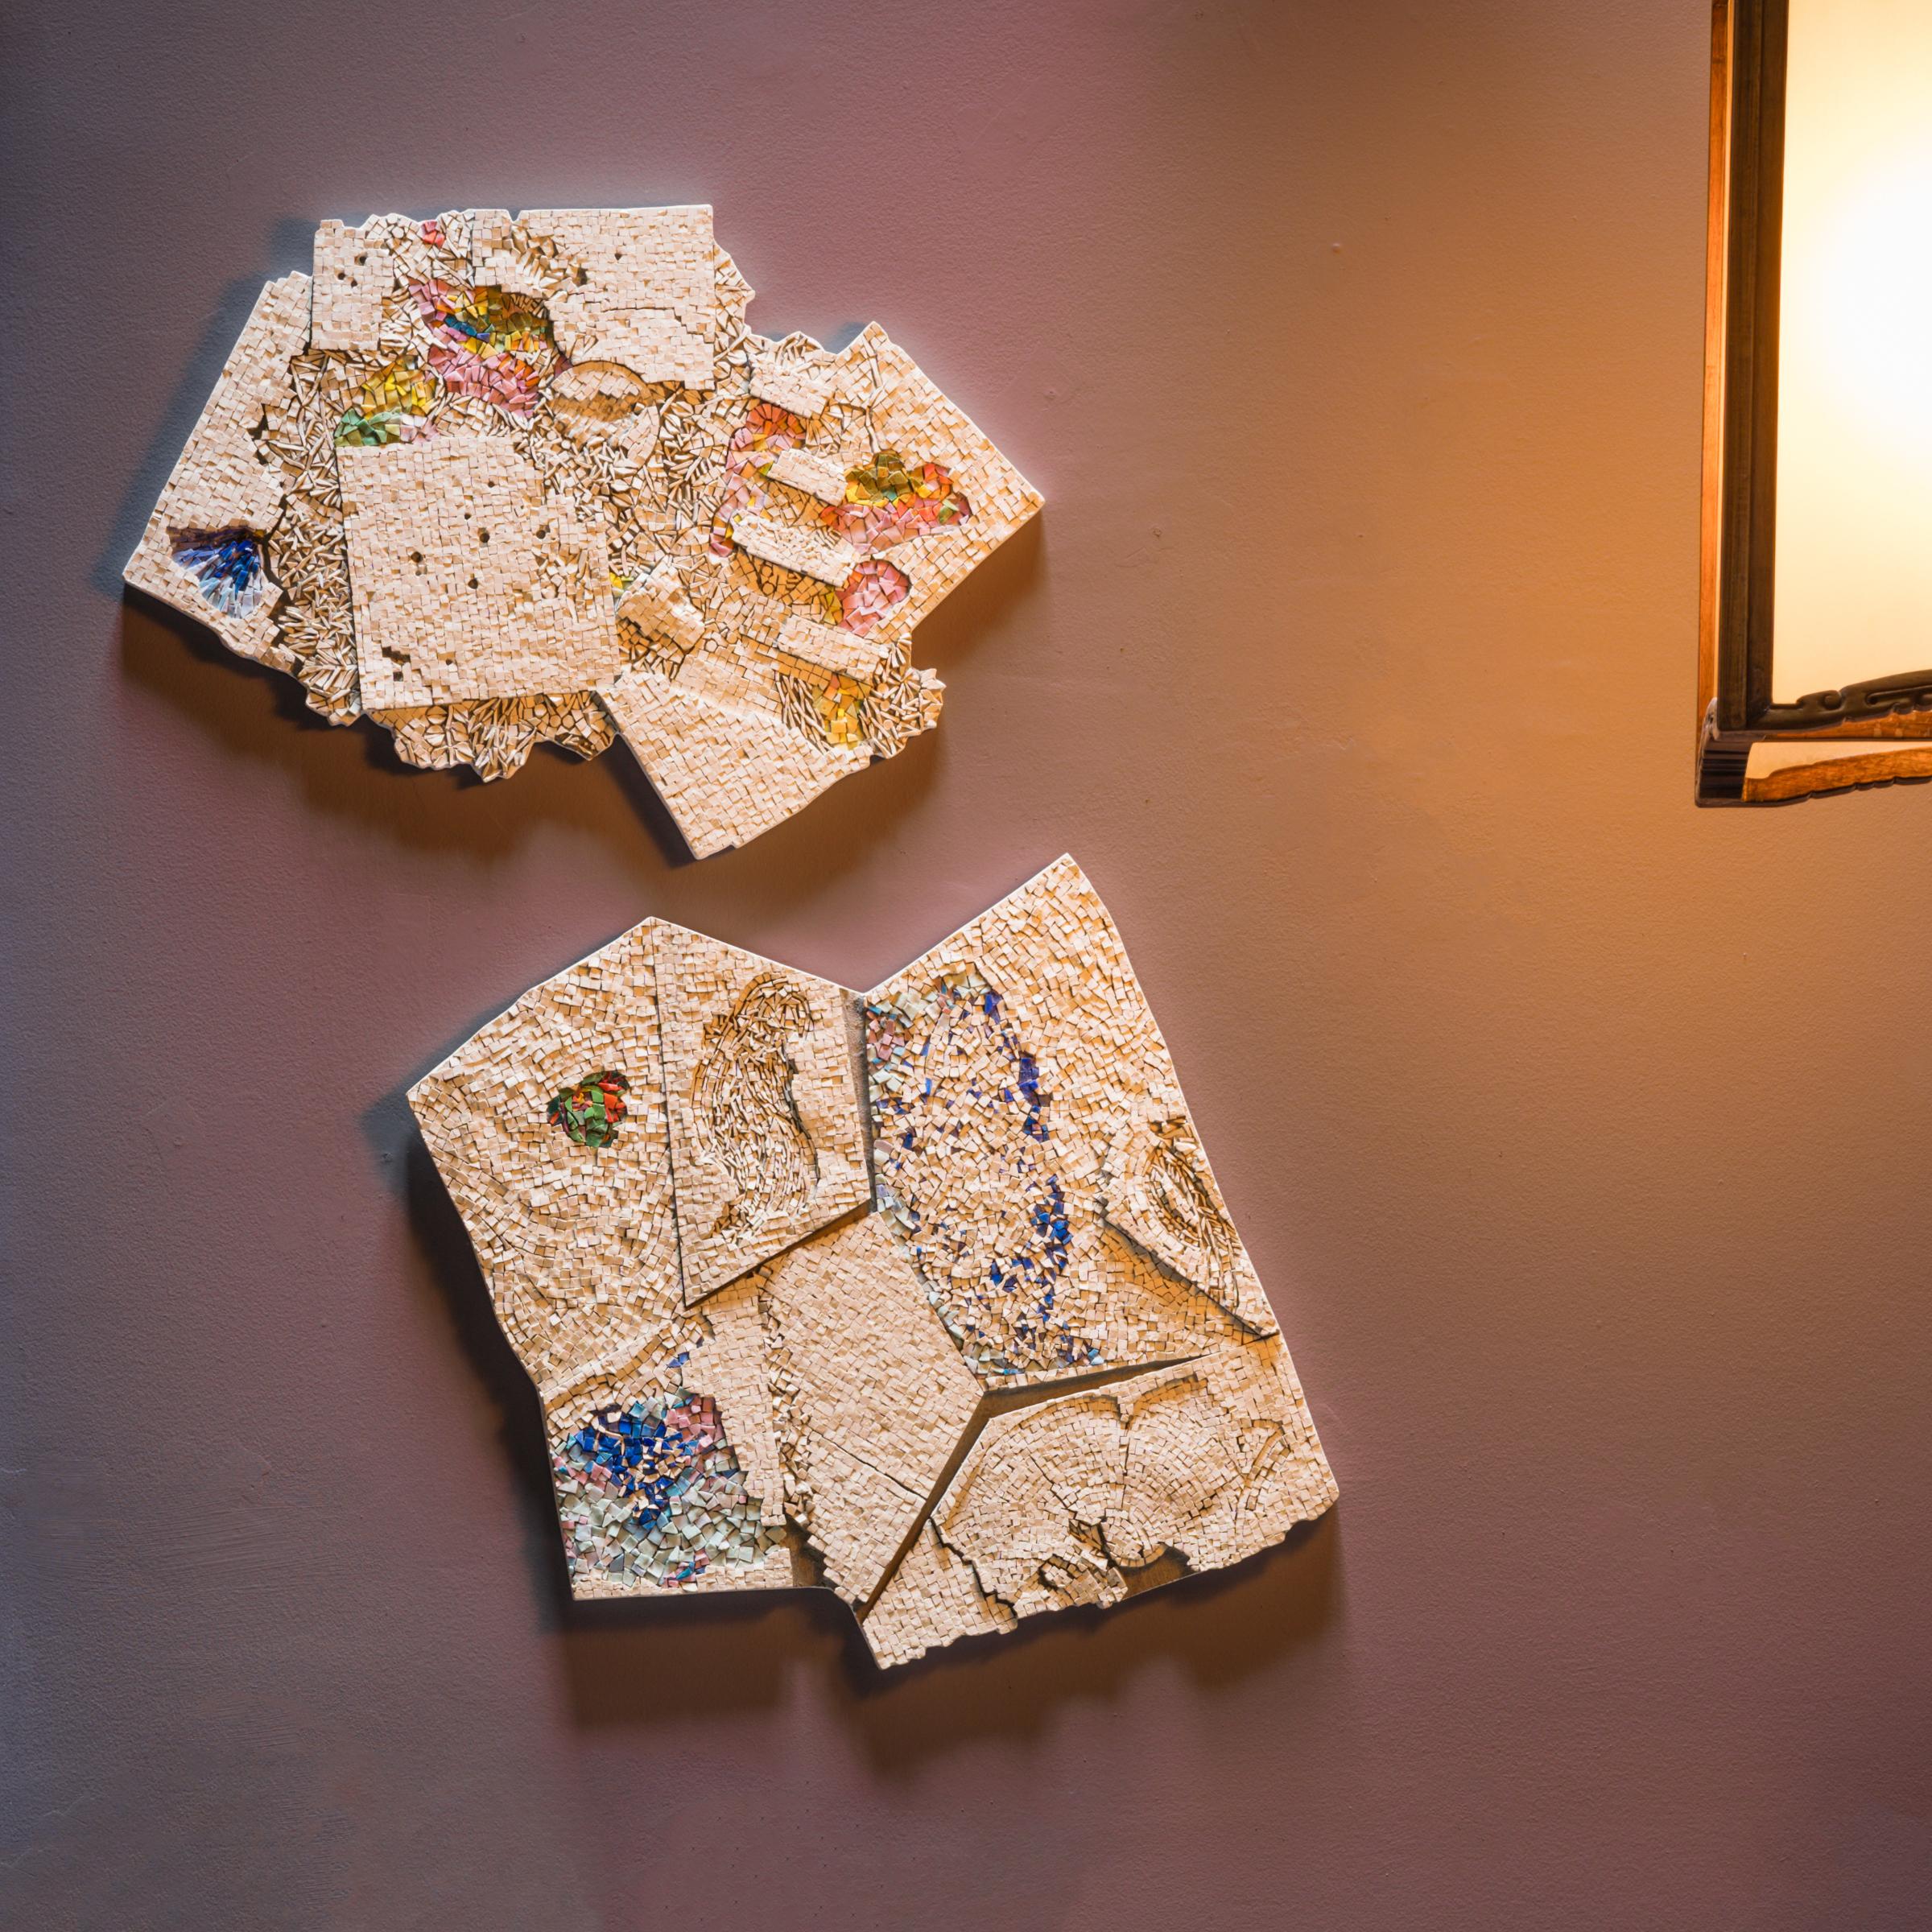 Die abstrakten Kompositionen des japanischen Mosaikkünstlers Toyoharu Kii sind filigran, ätherisch und stark strukturiert und spiegeln eine anspruchsvolle Herangehensweise an die technische Kunst der Mosaikherstellung wider. Kii, der in Florenz,